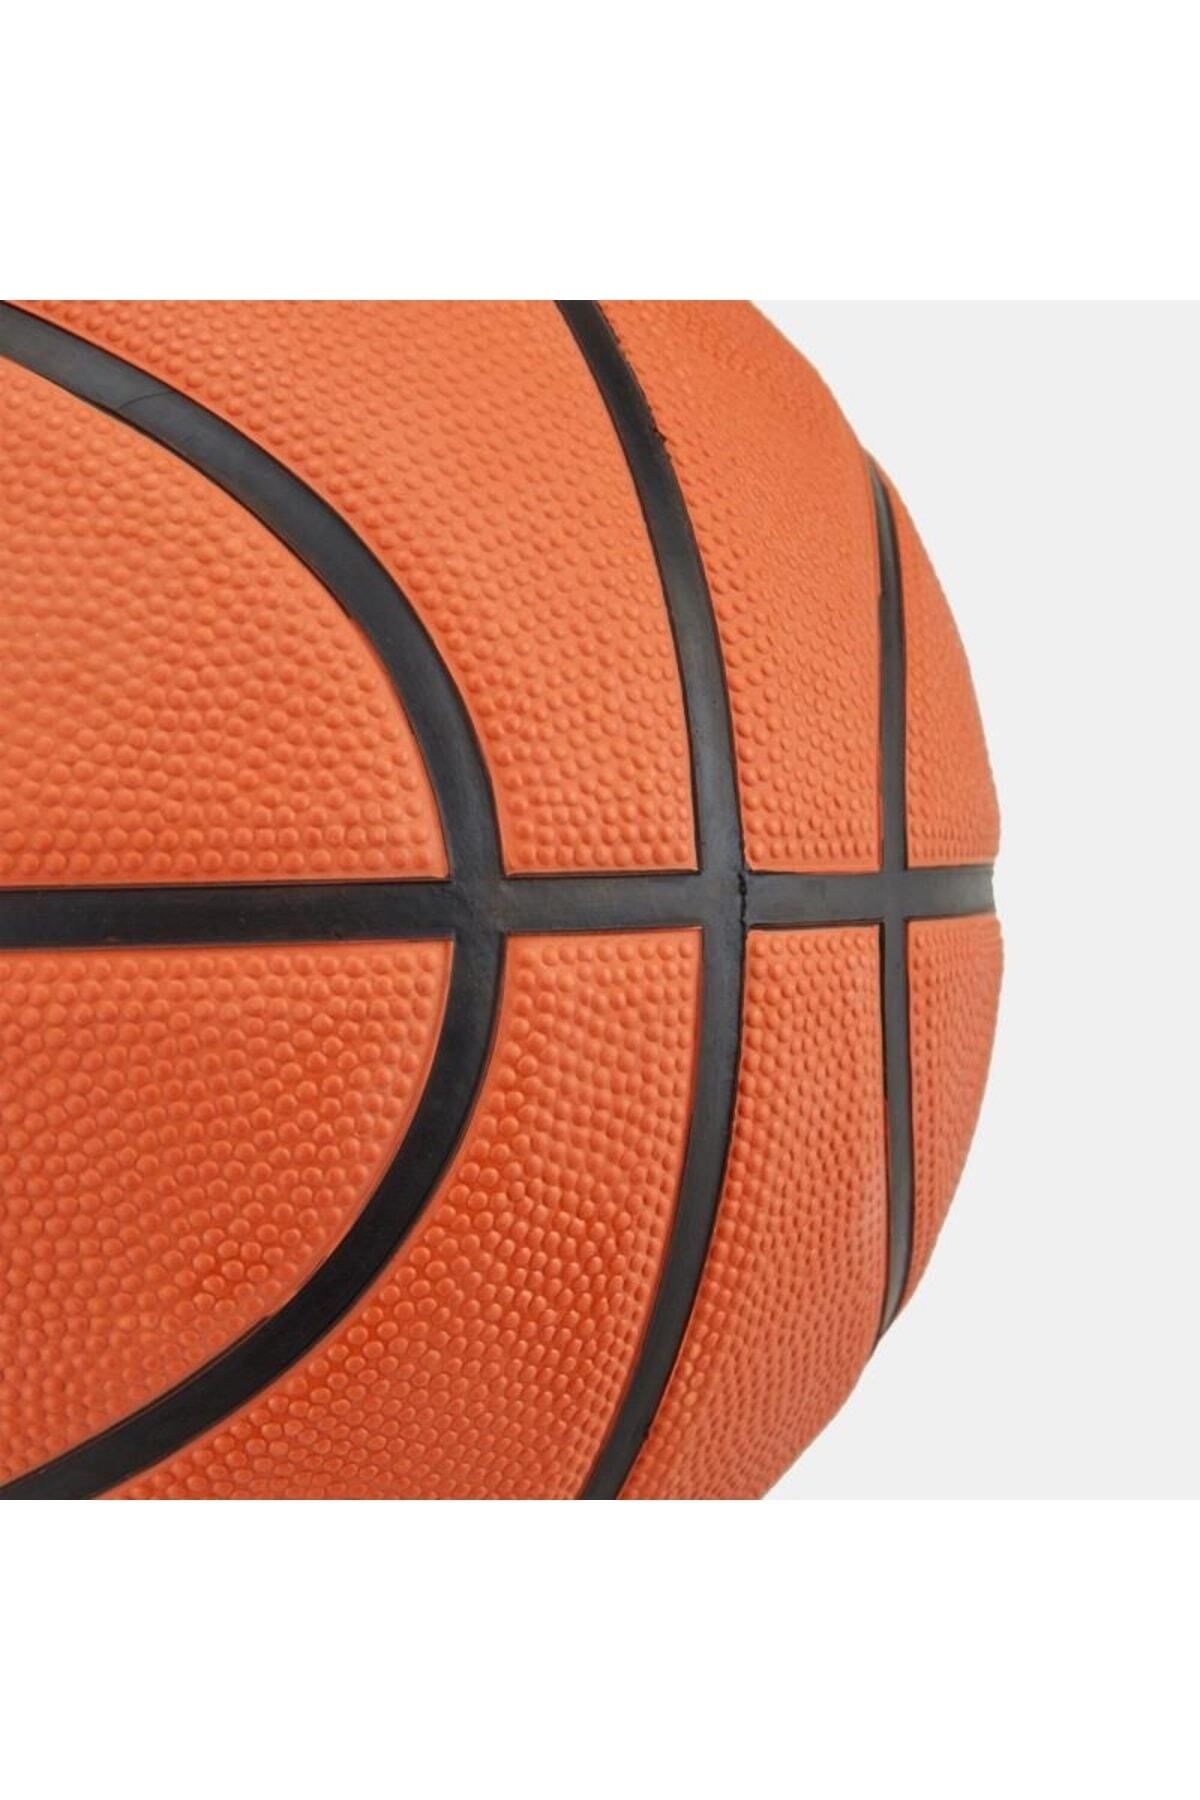 Spalding Tf-150 Basketbol Topu Varsity Size 6 Fıba Approved - Onaylı (84422z).